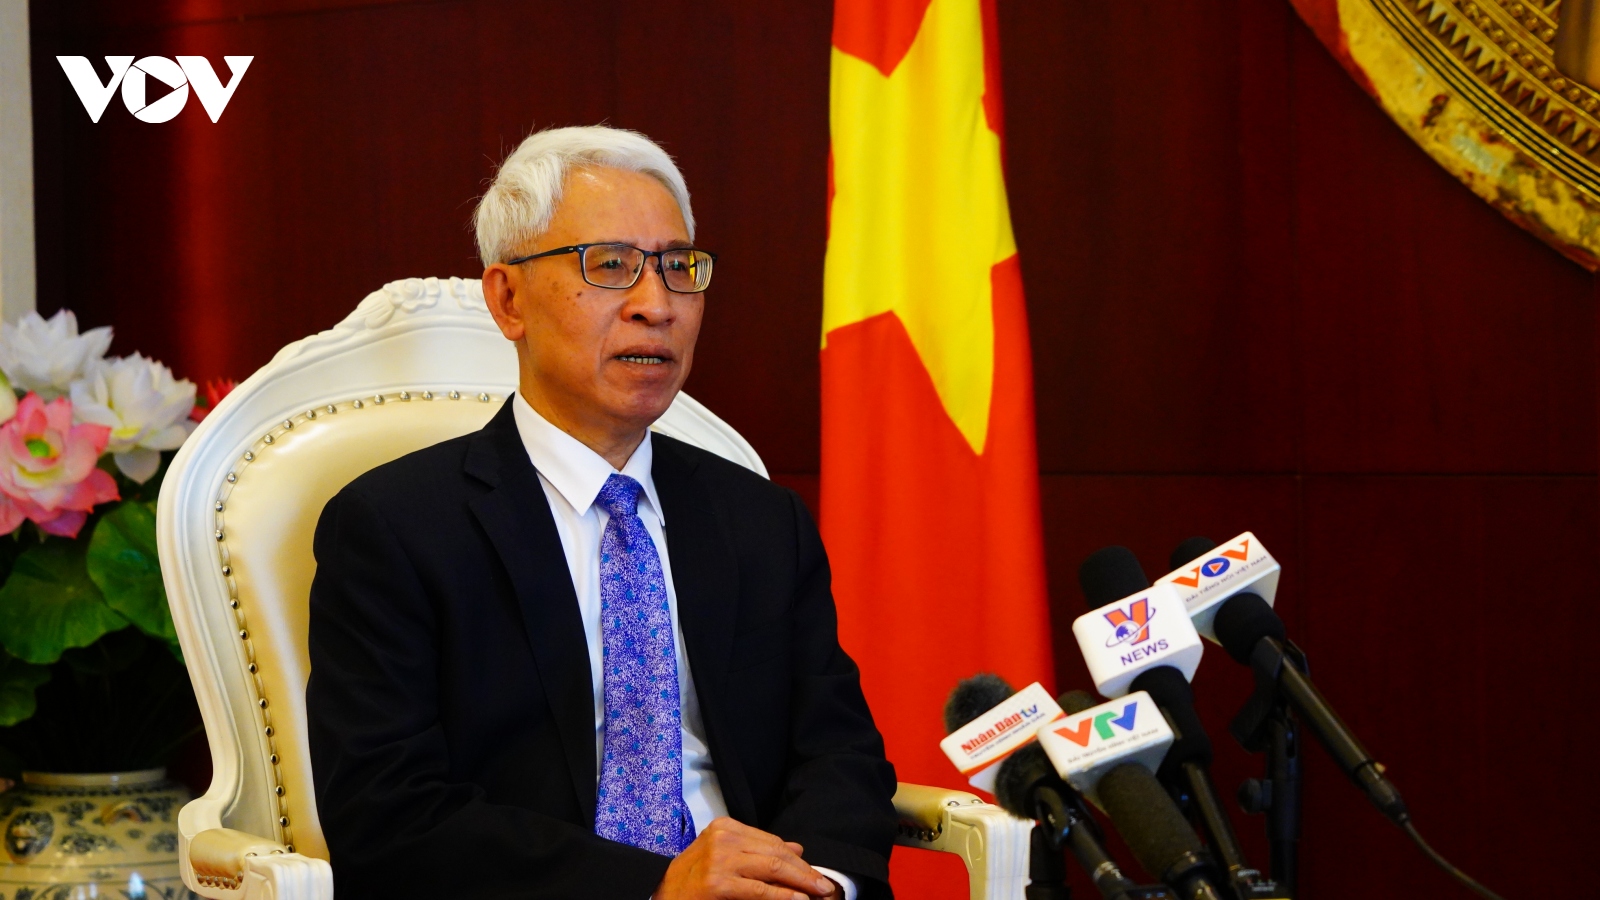 Chuyến thăm Trung Quốc của TBT Nguyễn Phú Trọng làm sâu sắc hơn quan hệ Việt - Trung